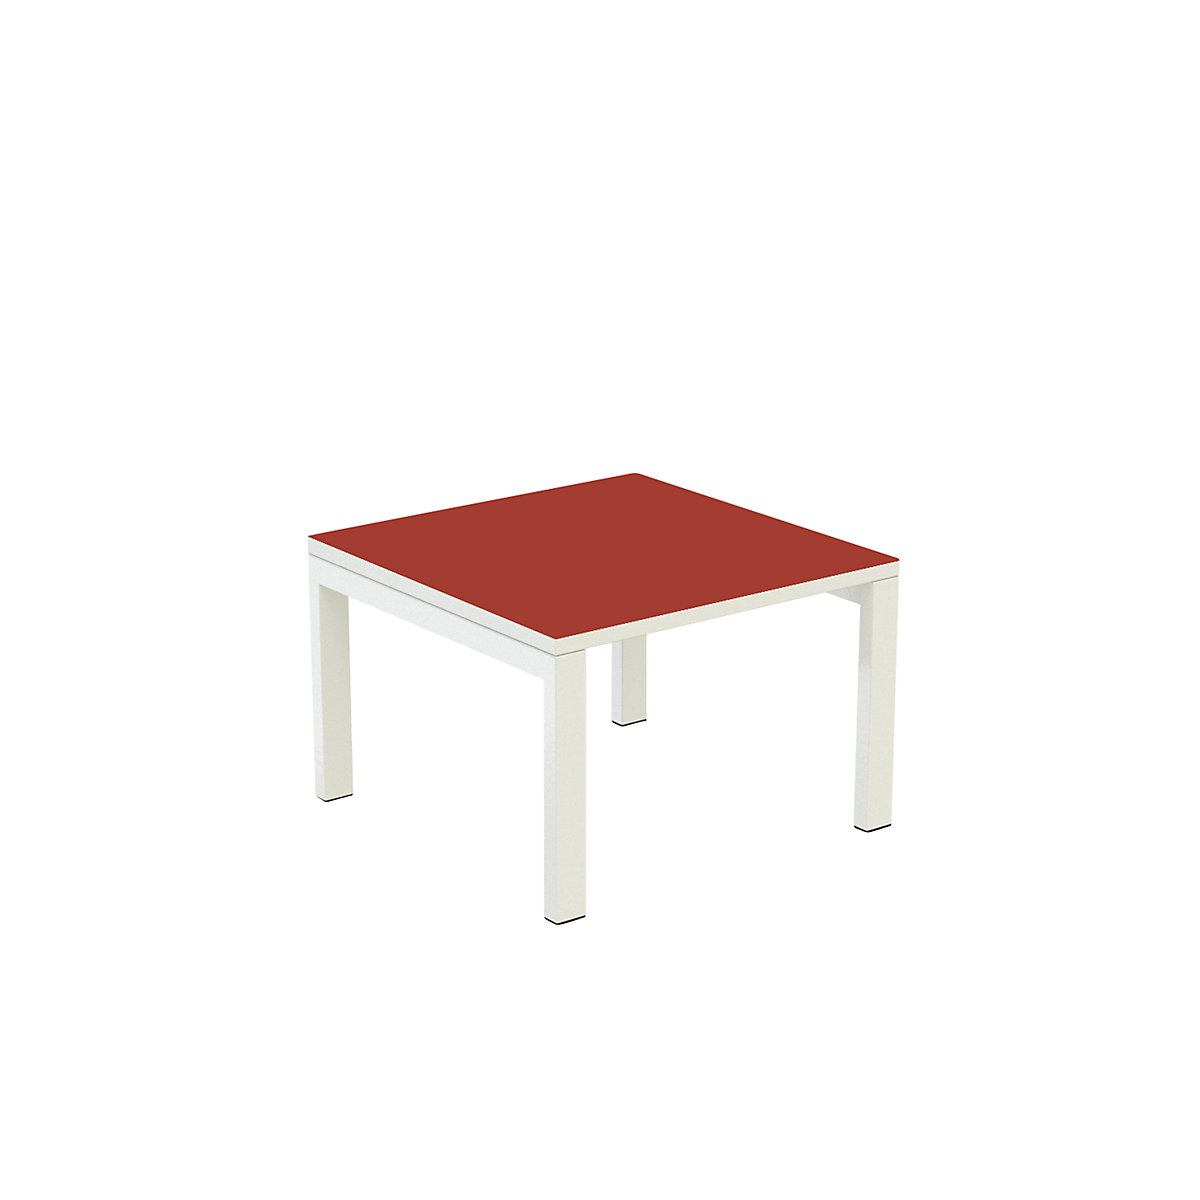 Stół dostawny easyDesk® – Paperflow, wys. x szer. x głęb. 400 x 600 x 600 mm, czerwony-4